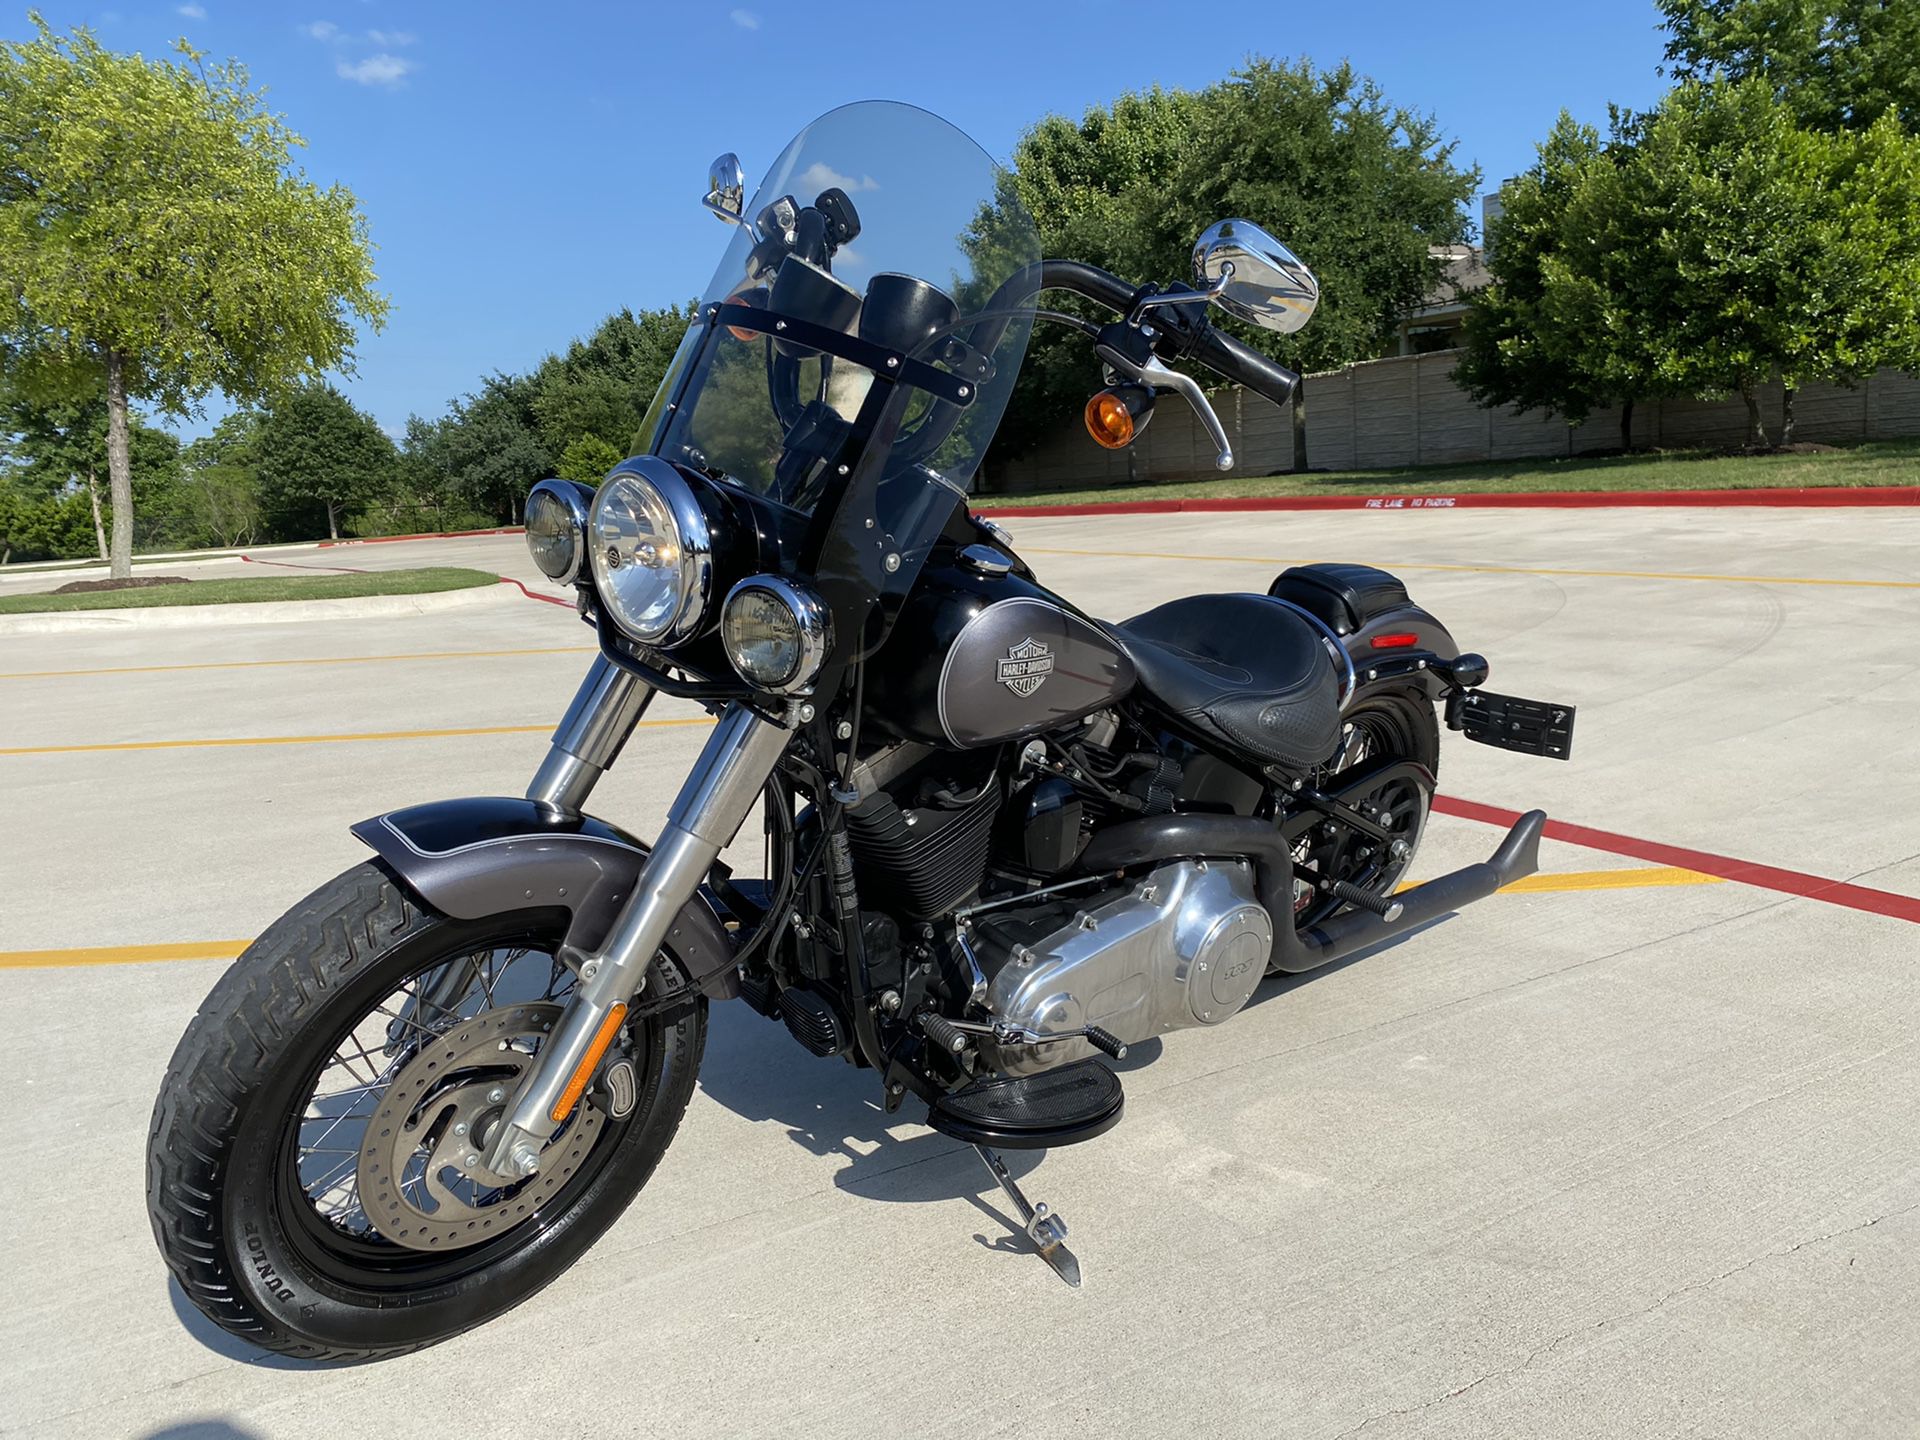 2015 Harley Davidson softail slim $8500 obo